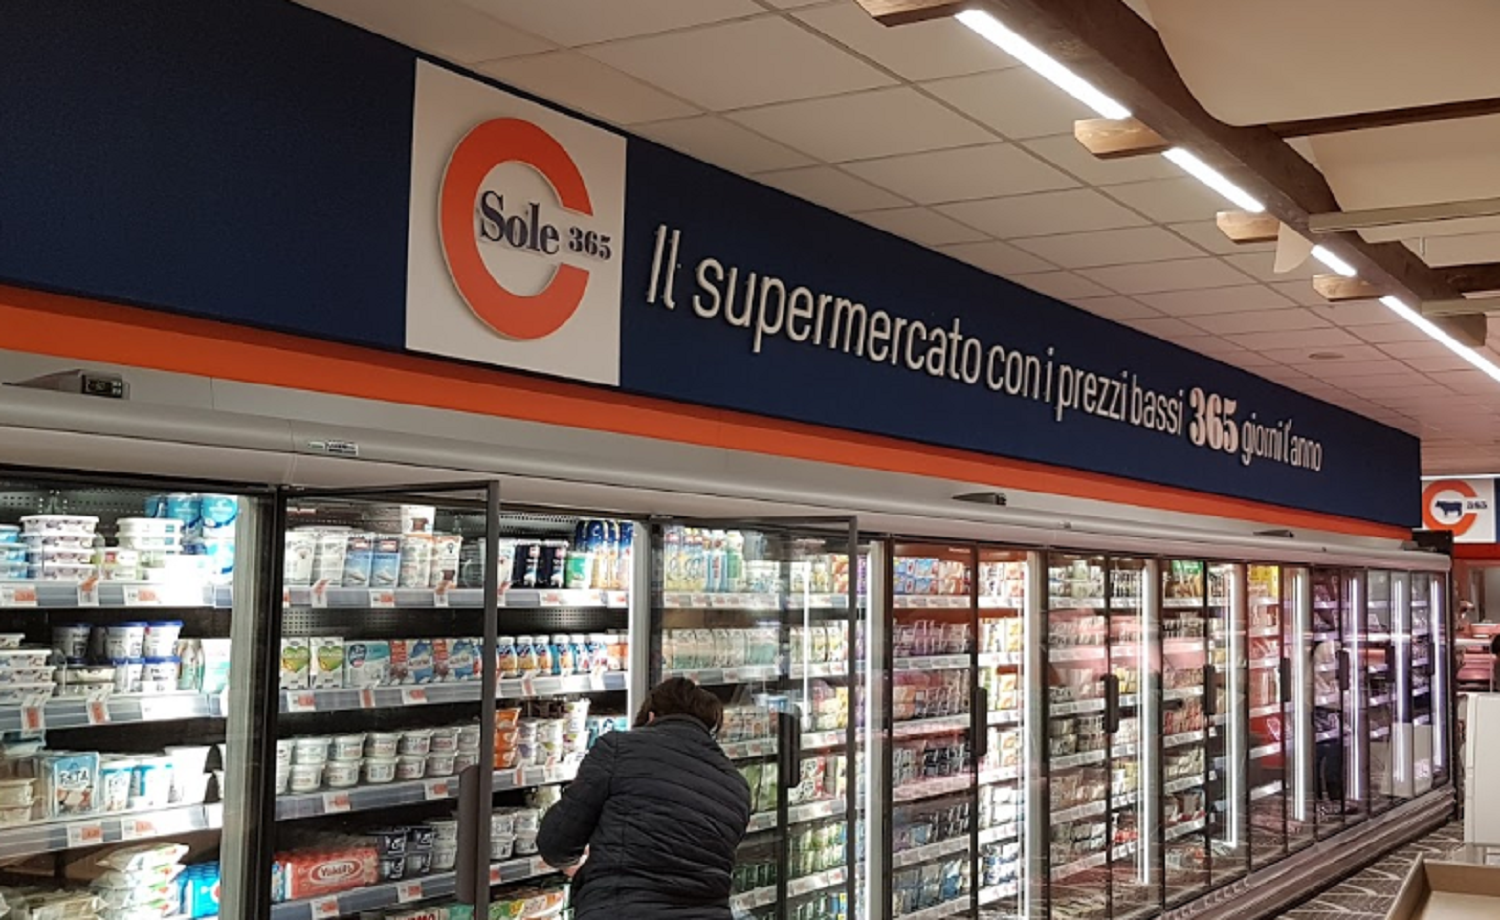 Supermercato Sole 365